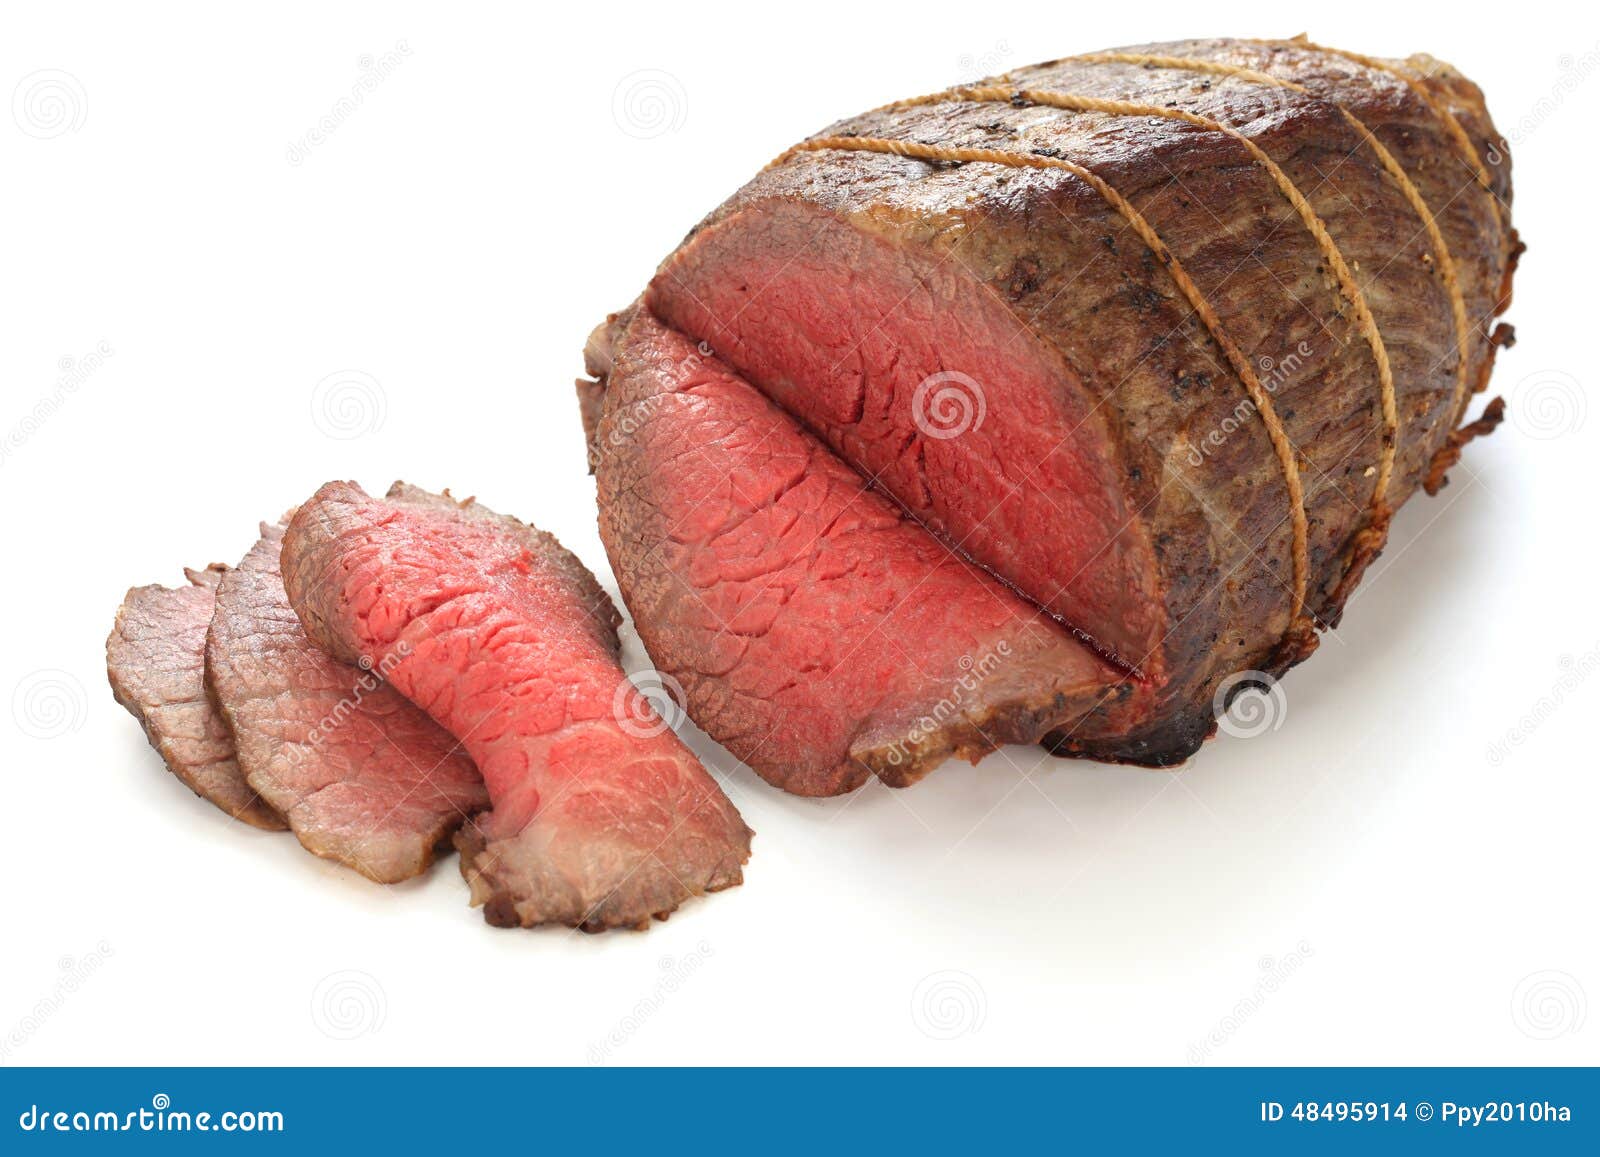 roast beef